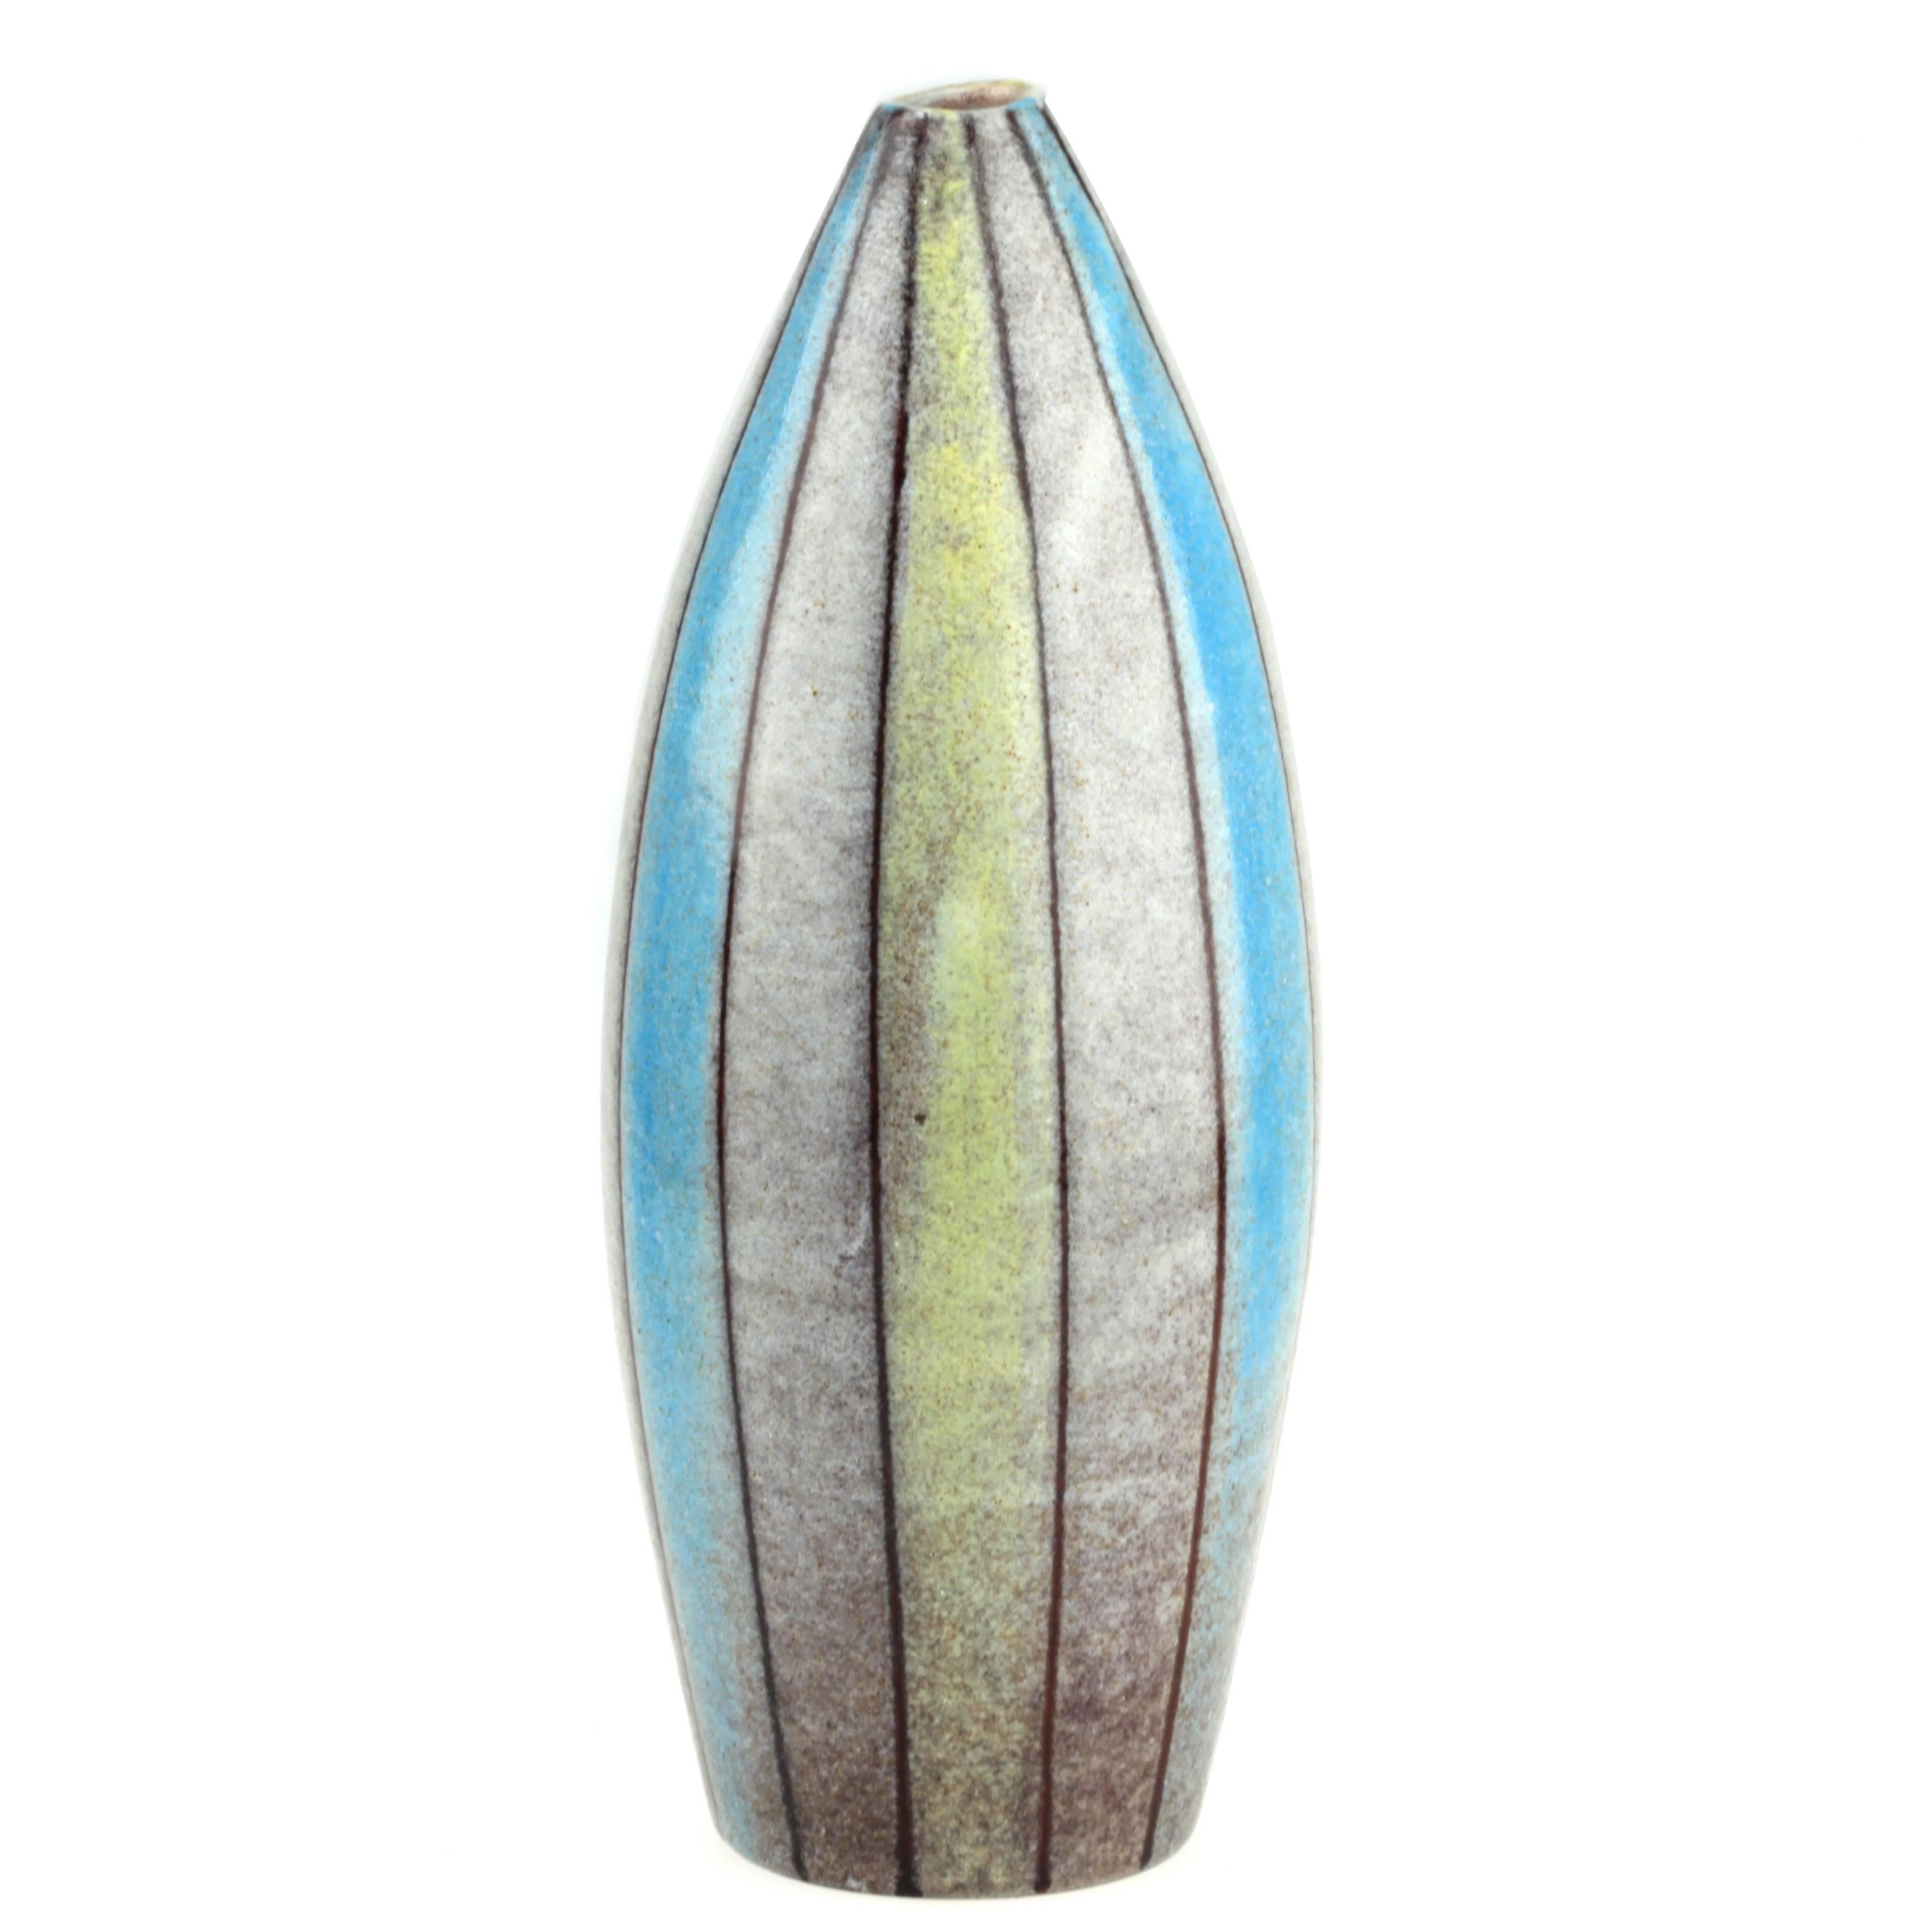 Aldo Londi Bitossi Ceramic Striped Vase For Sale